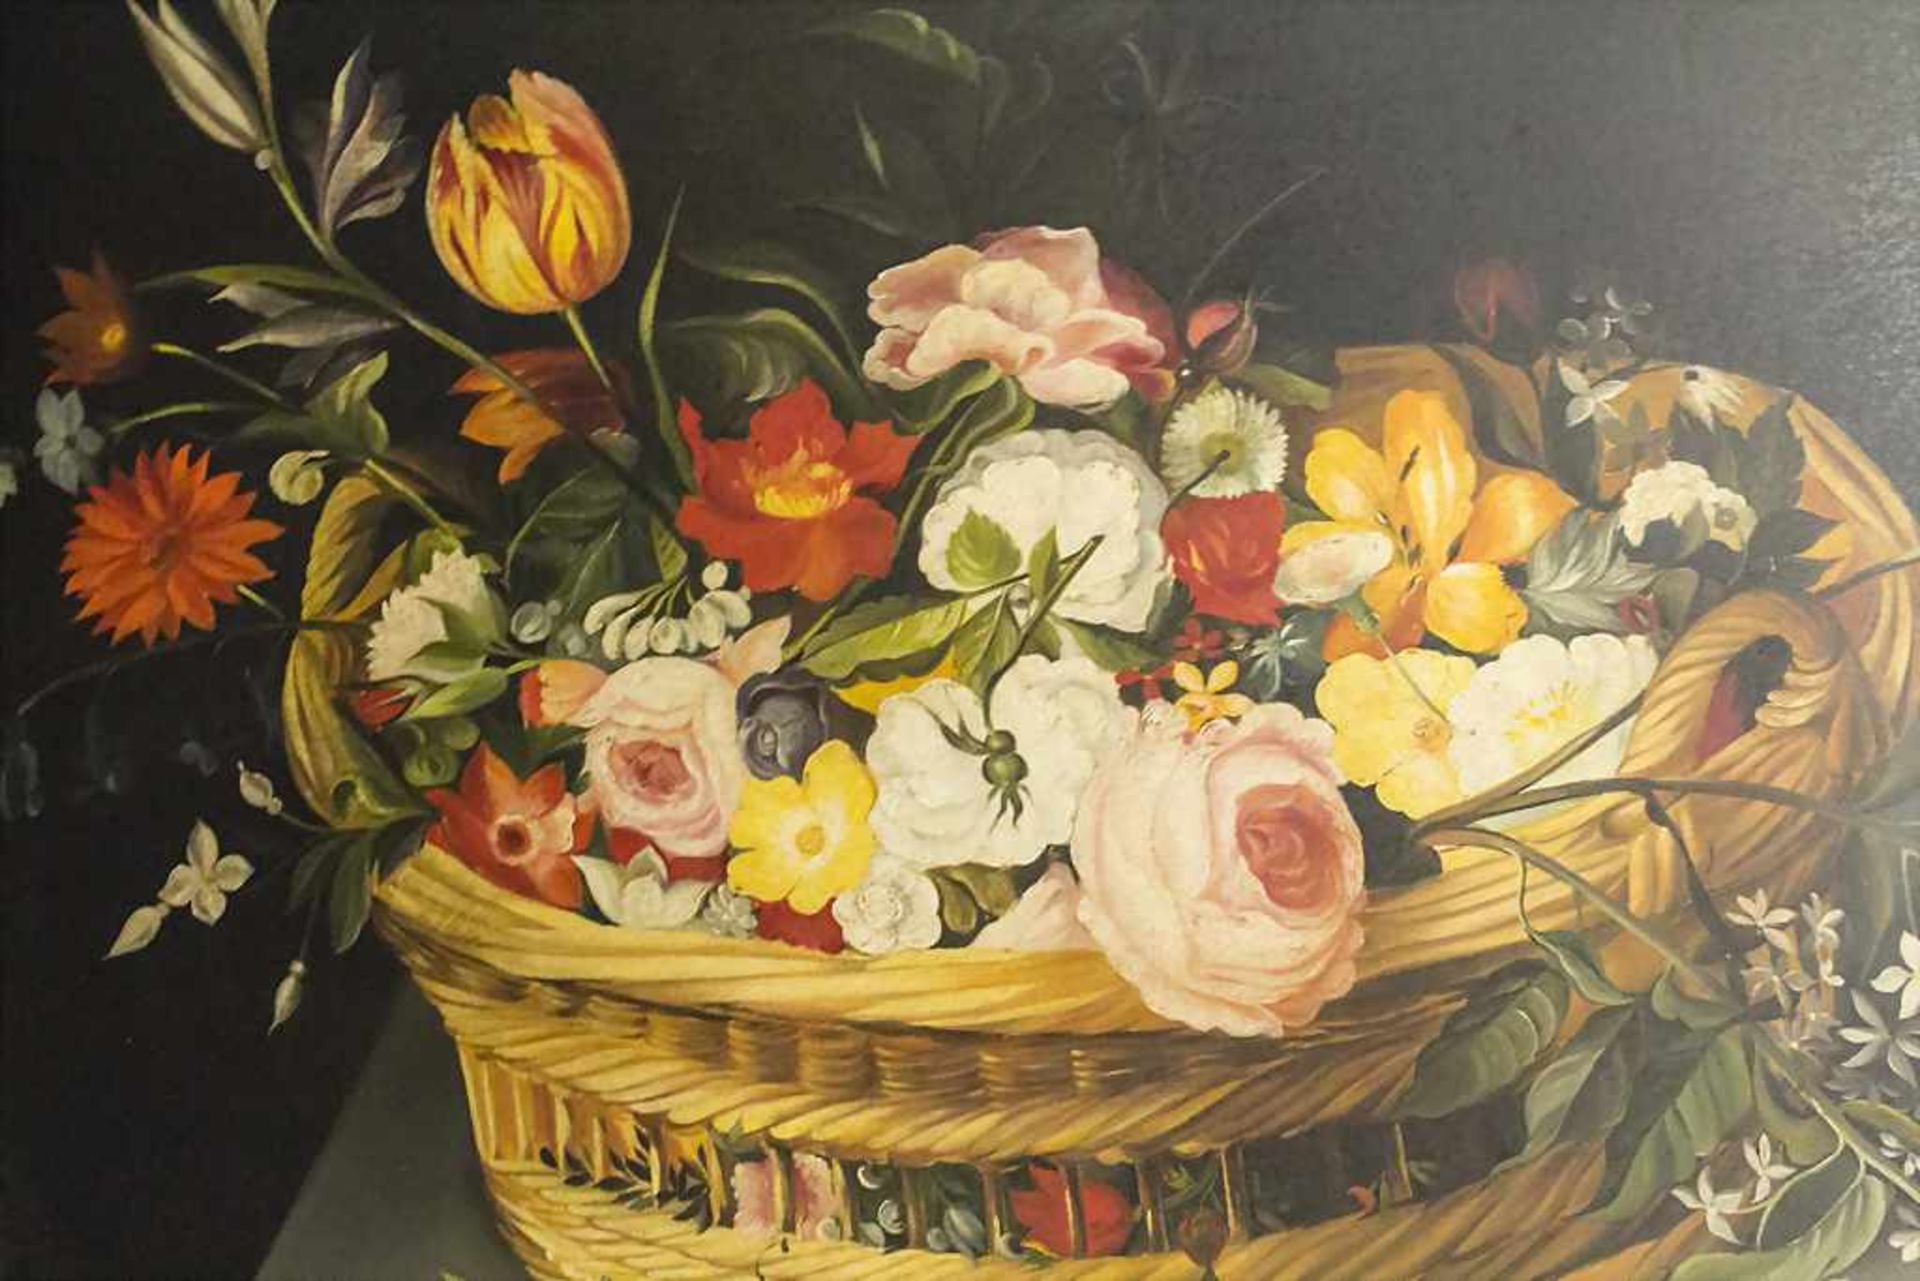 Künstler des 19. Jh., 'Stillleben mit Blumenkorb und Blumenvase' / 'A still life with flower ba - Bild 3 aus 5